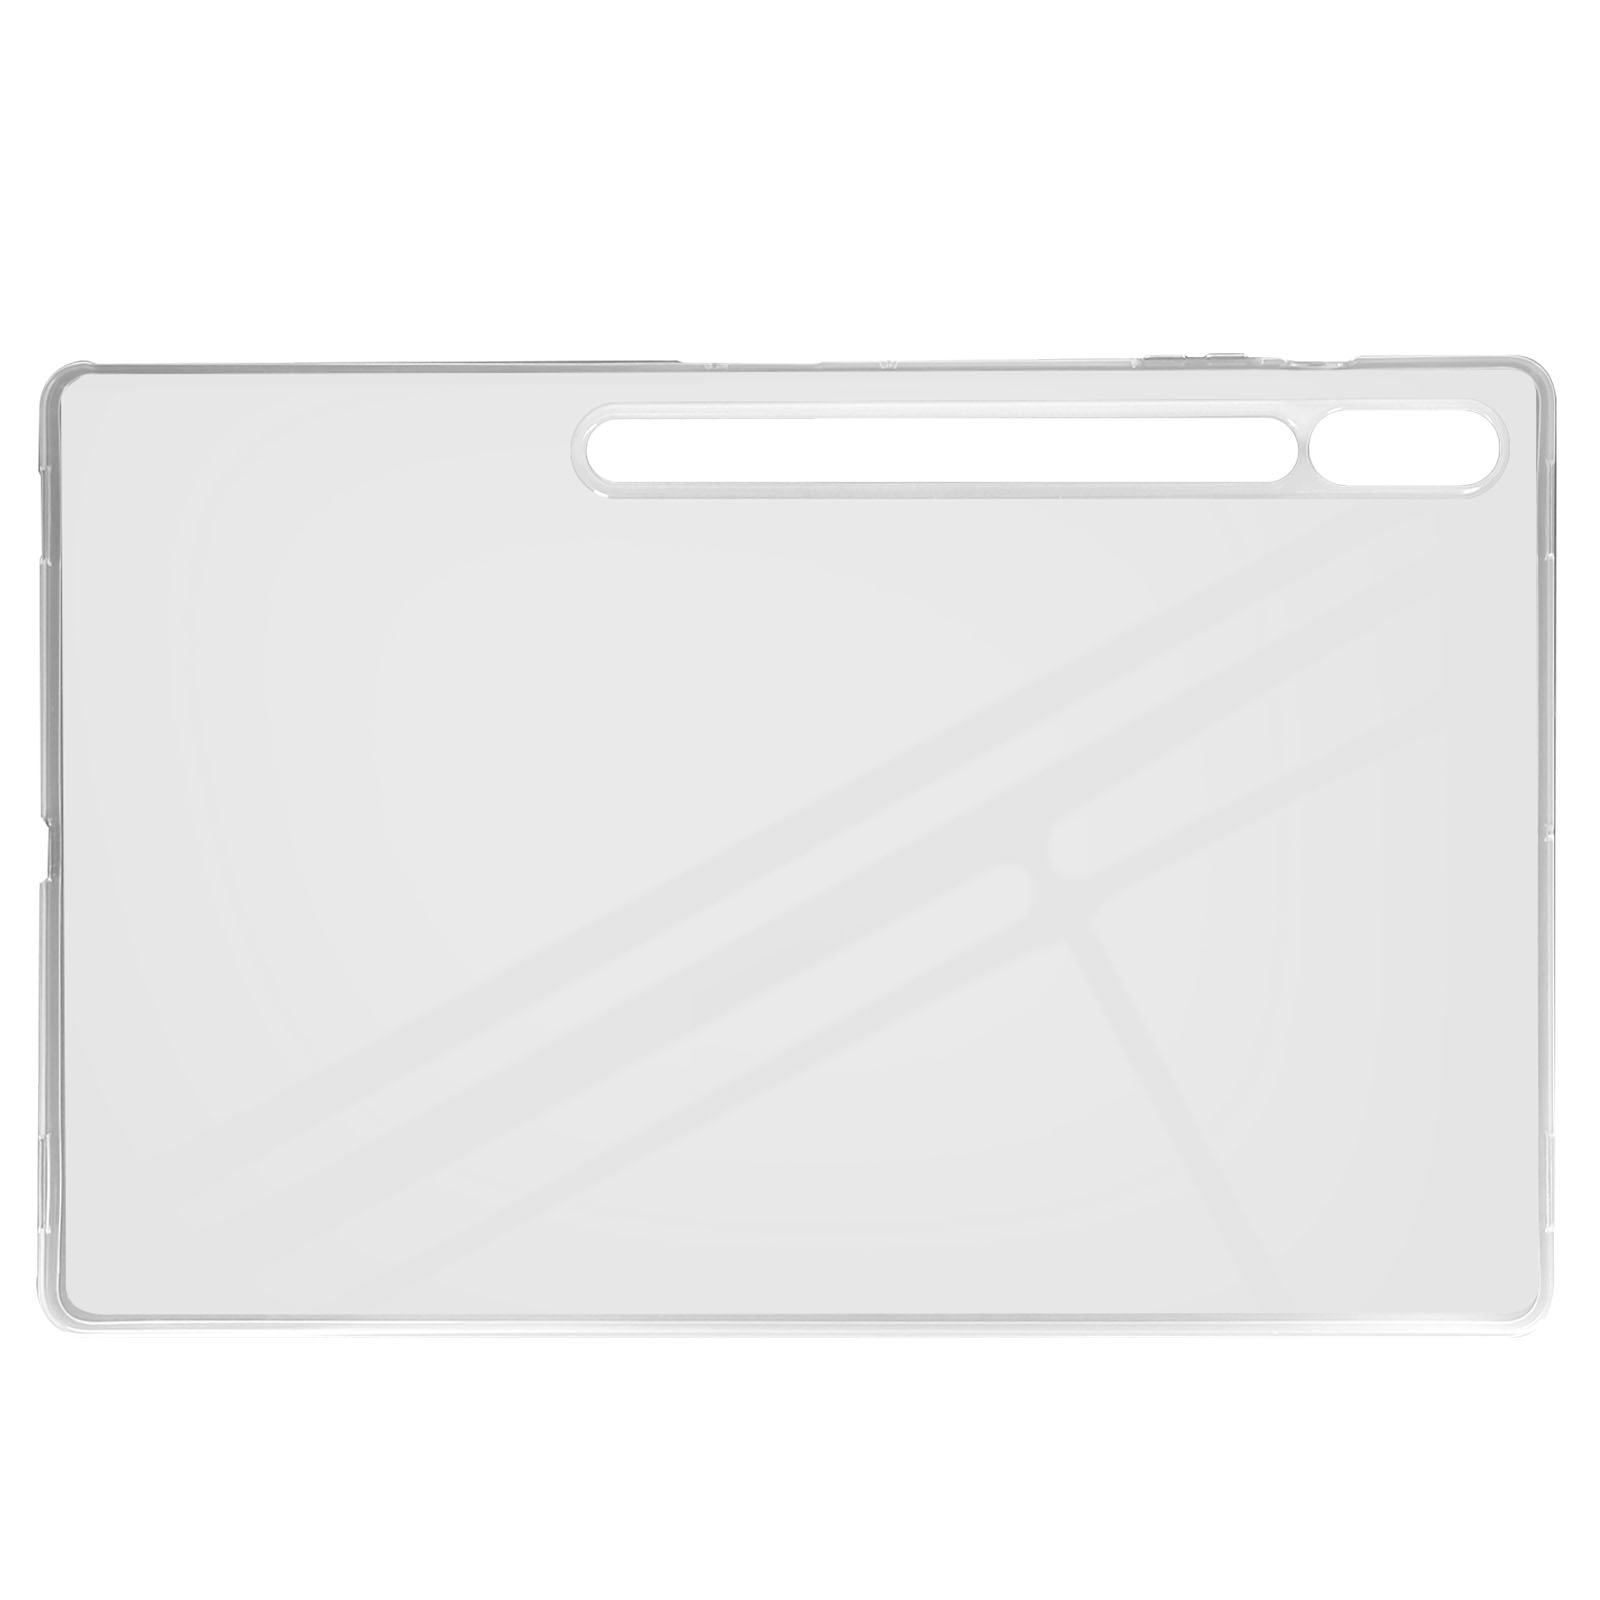 AVIZAR Classic Case Series für Backcover Transparent Schutzhüllen Silikongel, Samsung